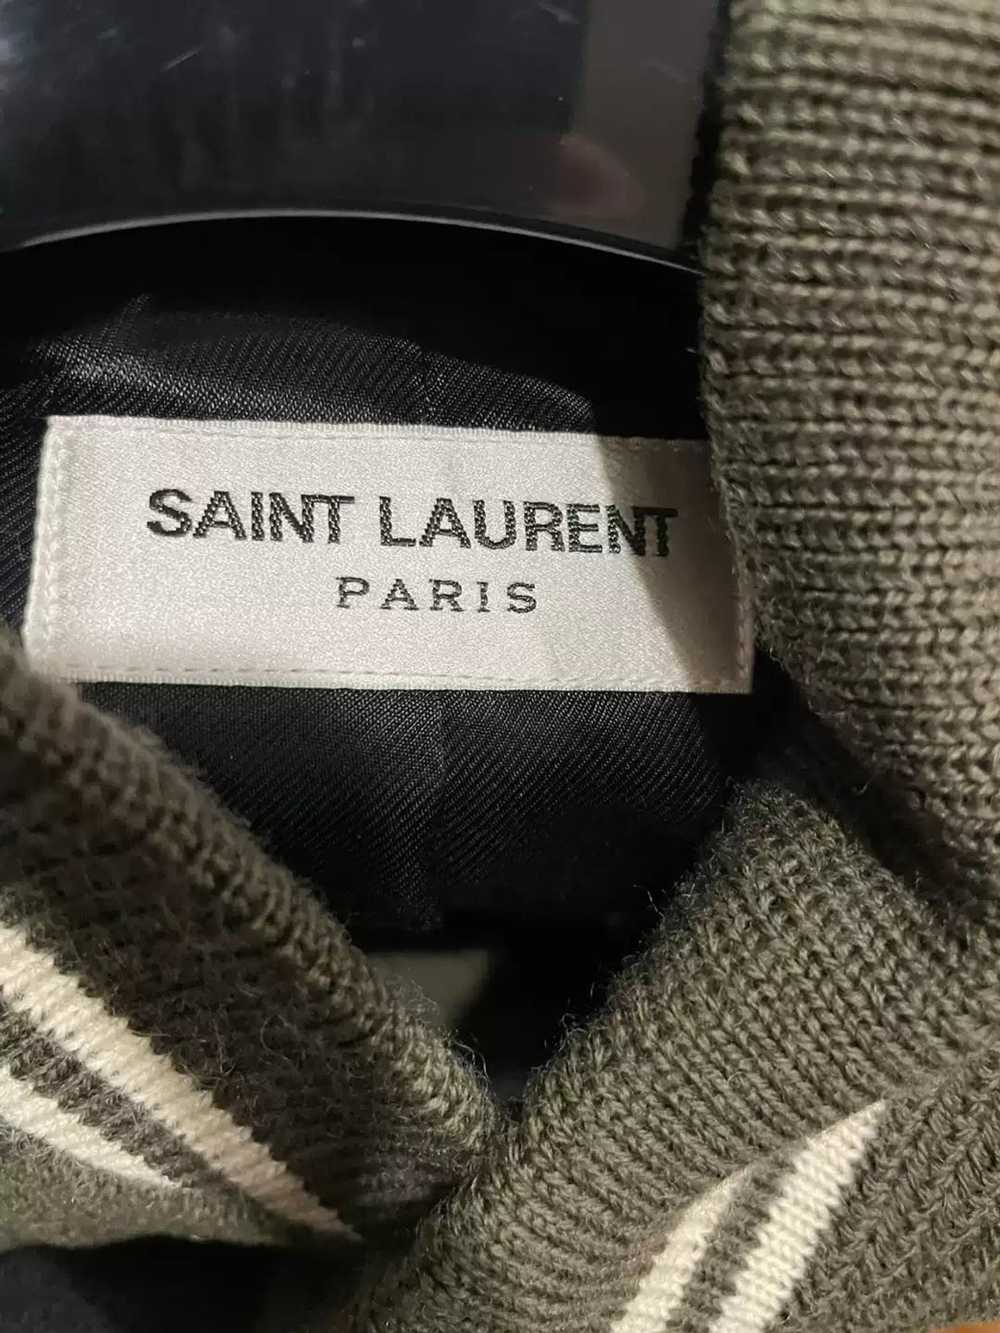 Yves Saint Laurent saint laurent Teddy jacket - image 2